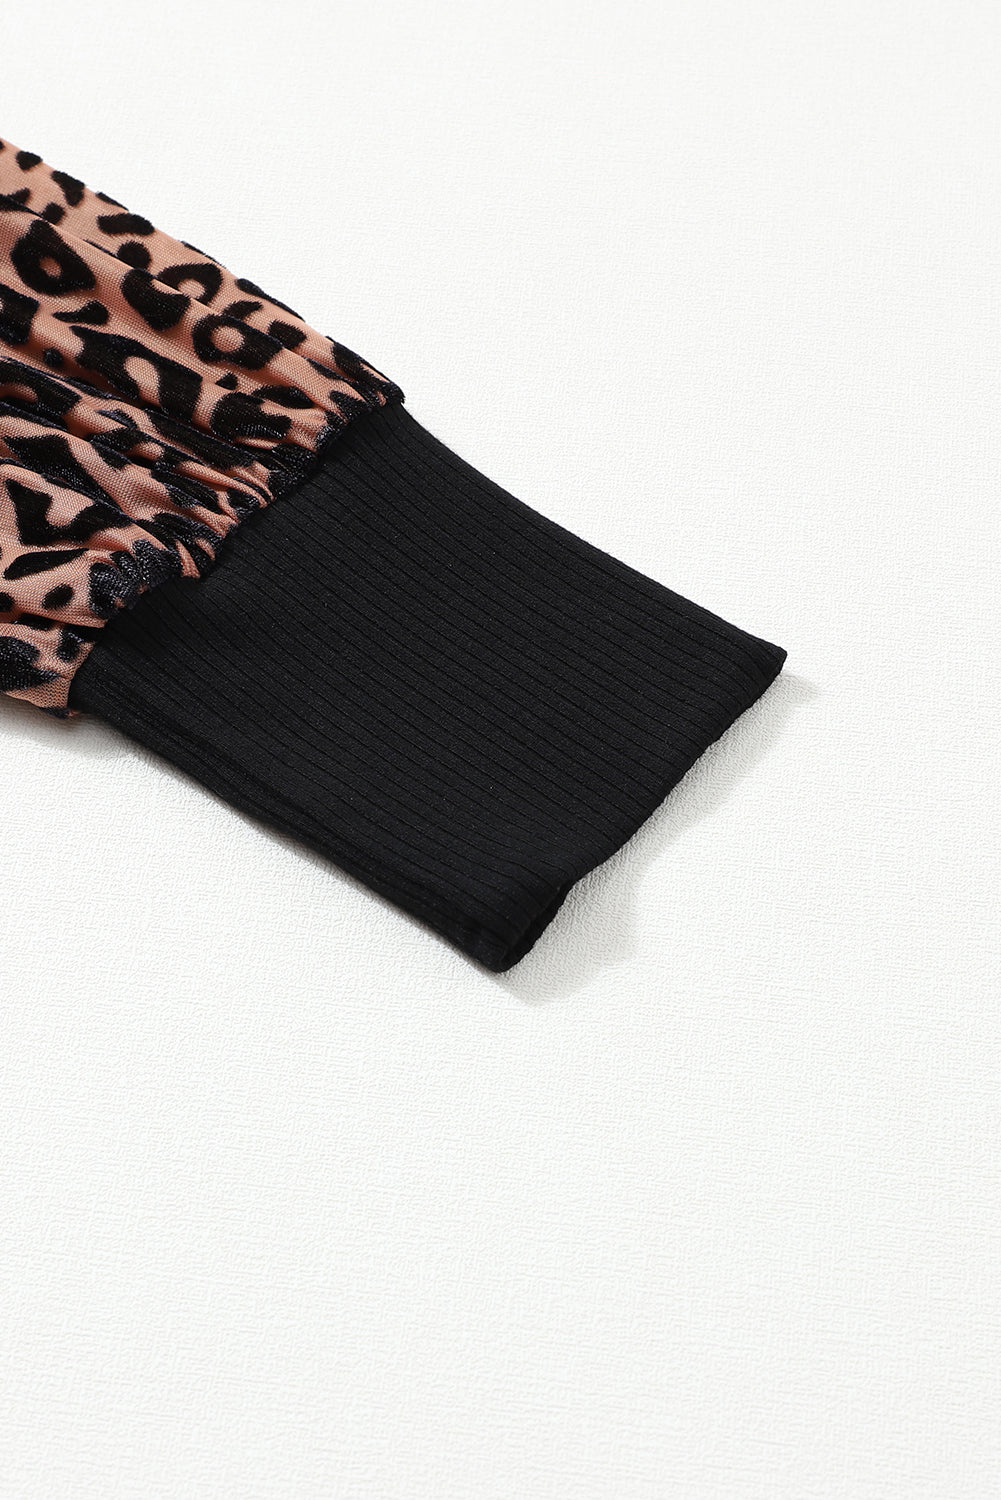 Blouse en tricot côtelé à manches longues et imprimé léopard abricot